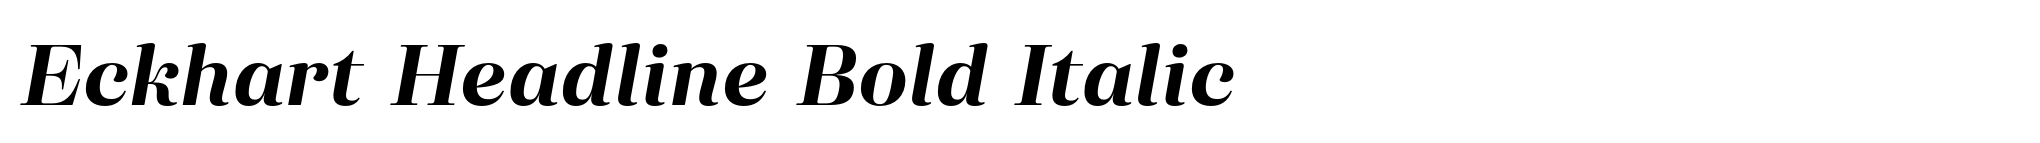 Eckhart Headline Bold Italic image